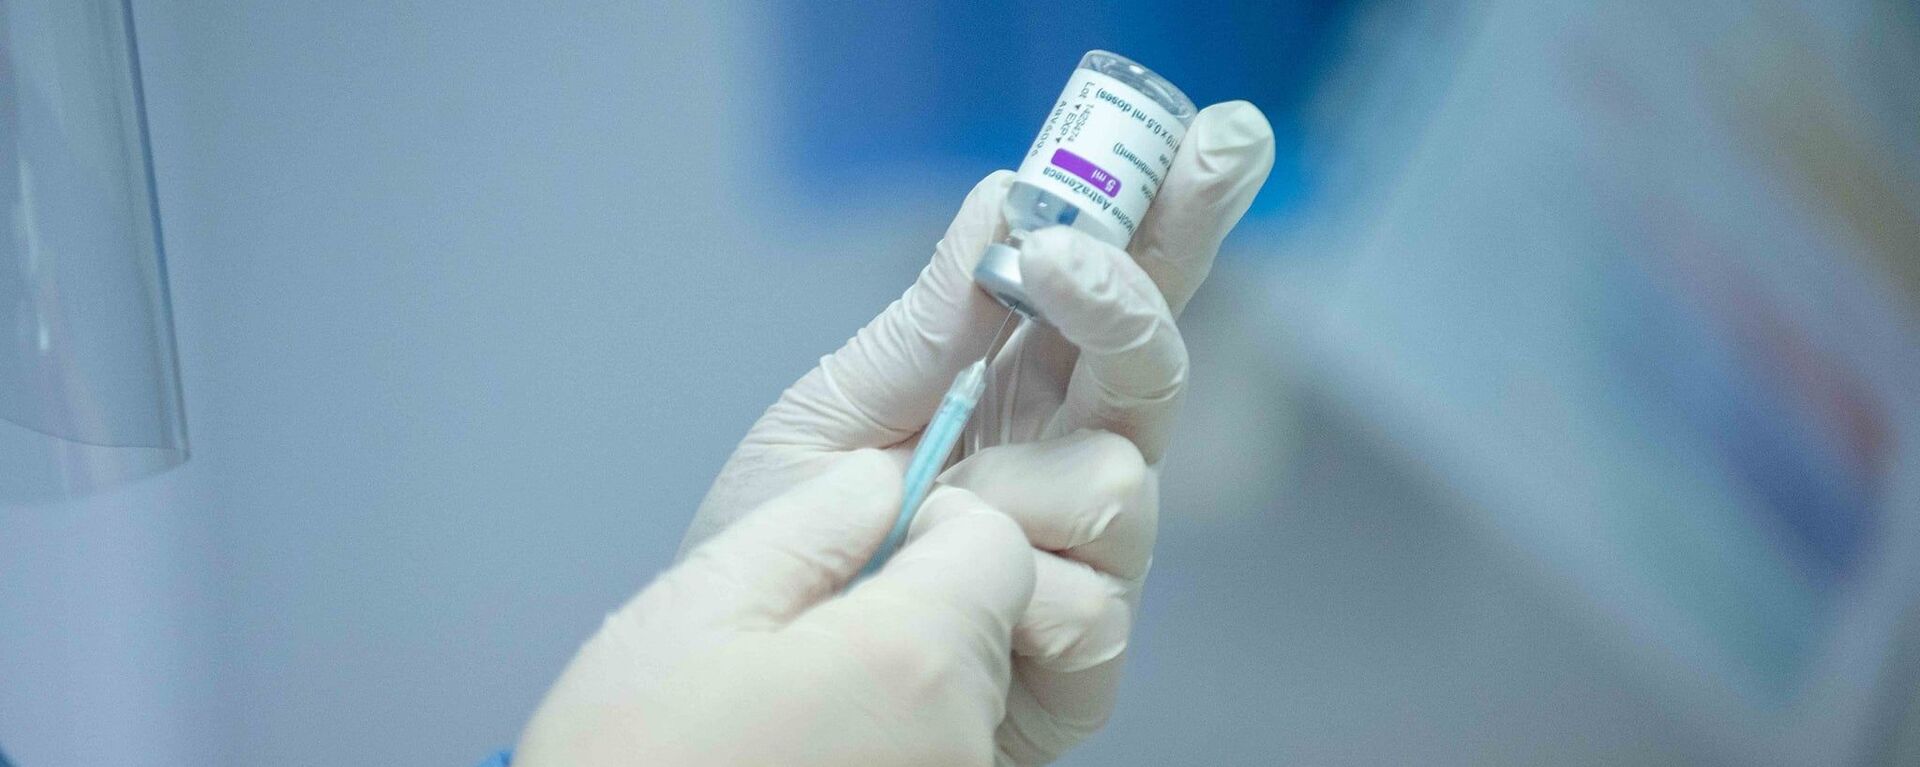 В Молдове стартовала вакцинация врачей от коронавируса - Sputnik Молдова, 1920, 01.04.2021